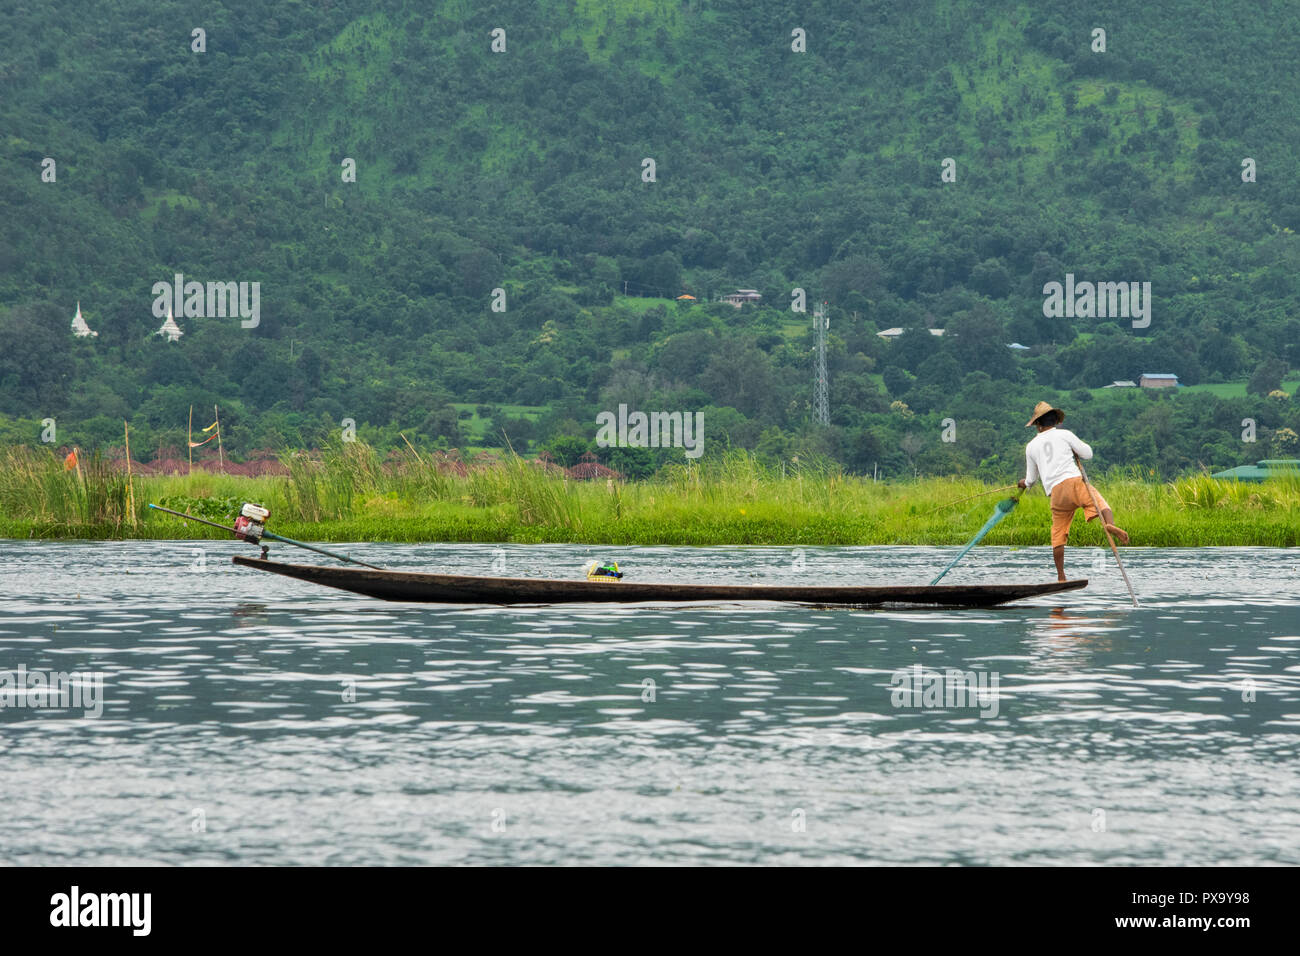 Billet, pêcheur local en chemise blanche et orange shorts en équilibre sur un pied sur la tête du bateau et en tirant pour la collecte nette, du poisson du lac Inle Birmanie Banque D'Images